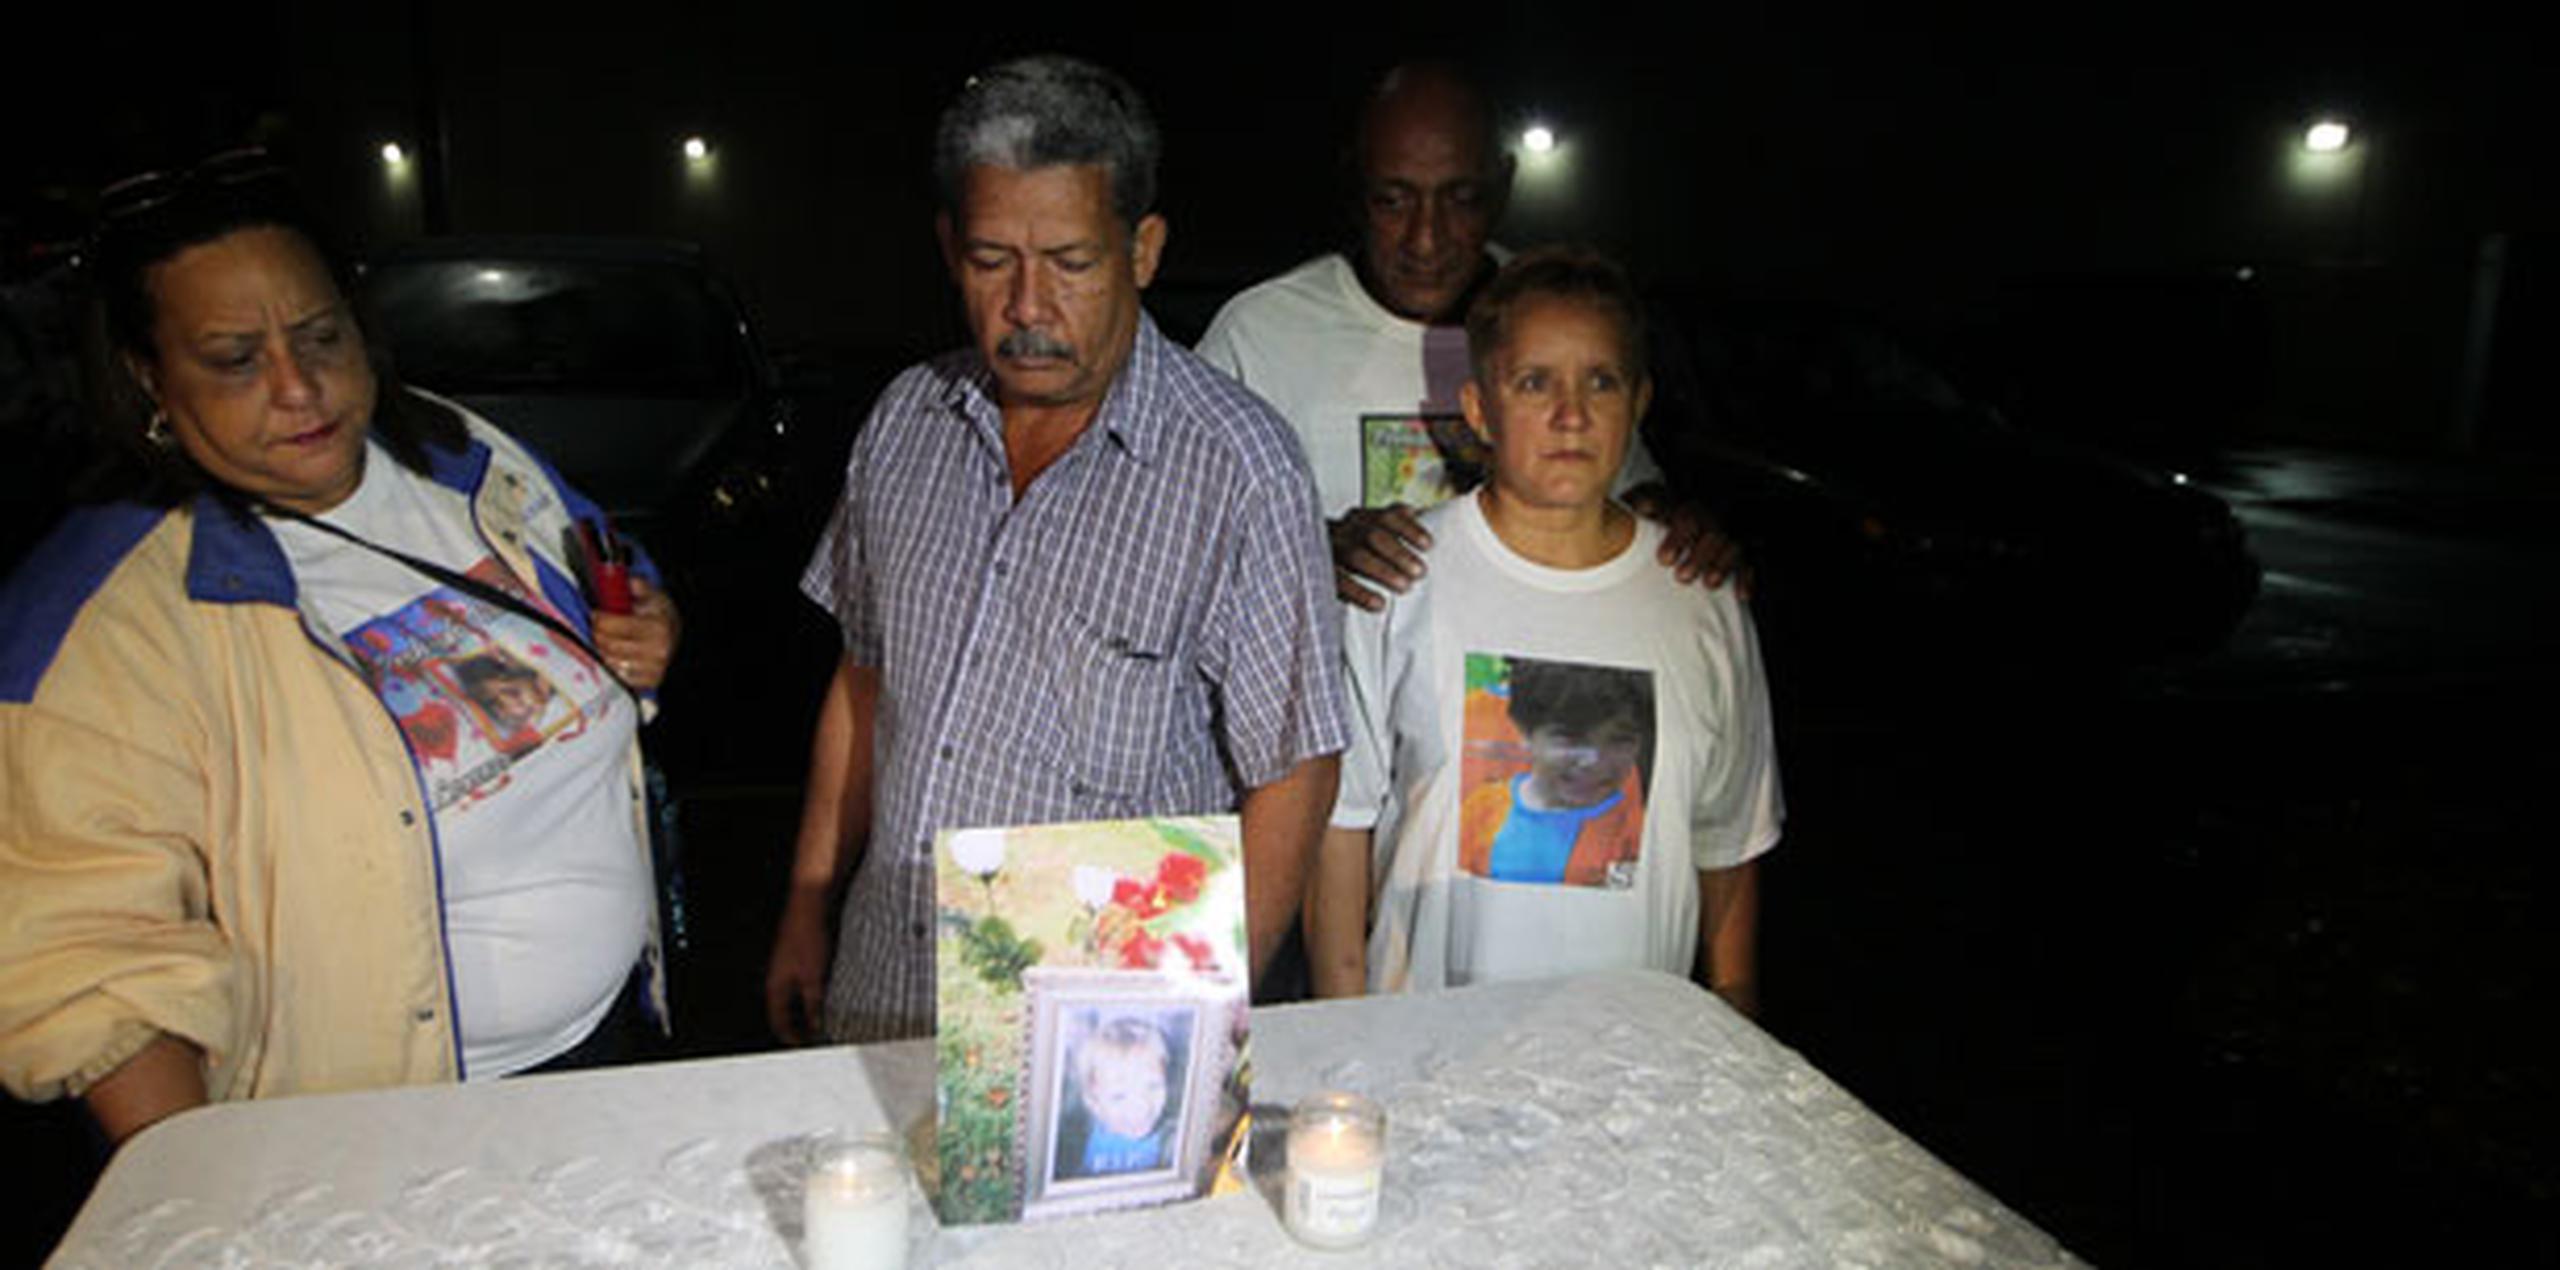 El grupo denominado "Justicia para Lorenzo Ya", integrado por vecinos del pueblo de Dorado, ha realizado los actos de vigilia en cada aniversario desde el triste incidente. (alex.figueroa@gfrmedia.com)